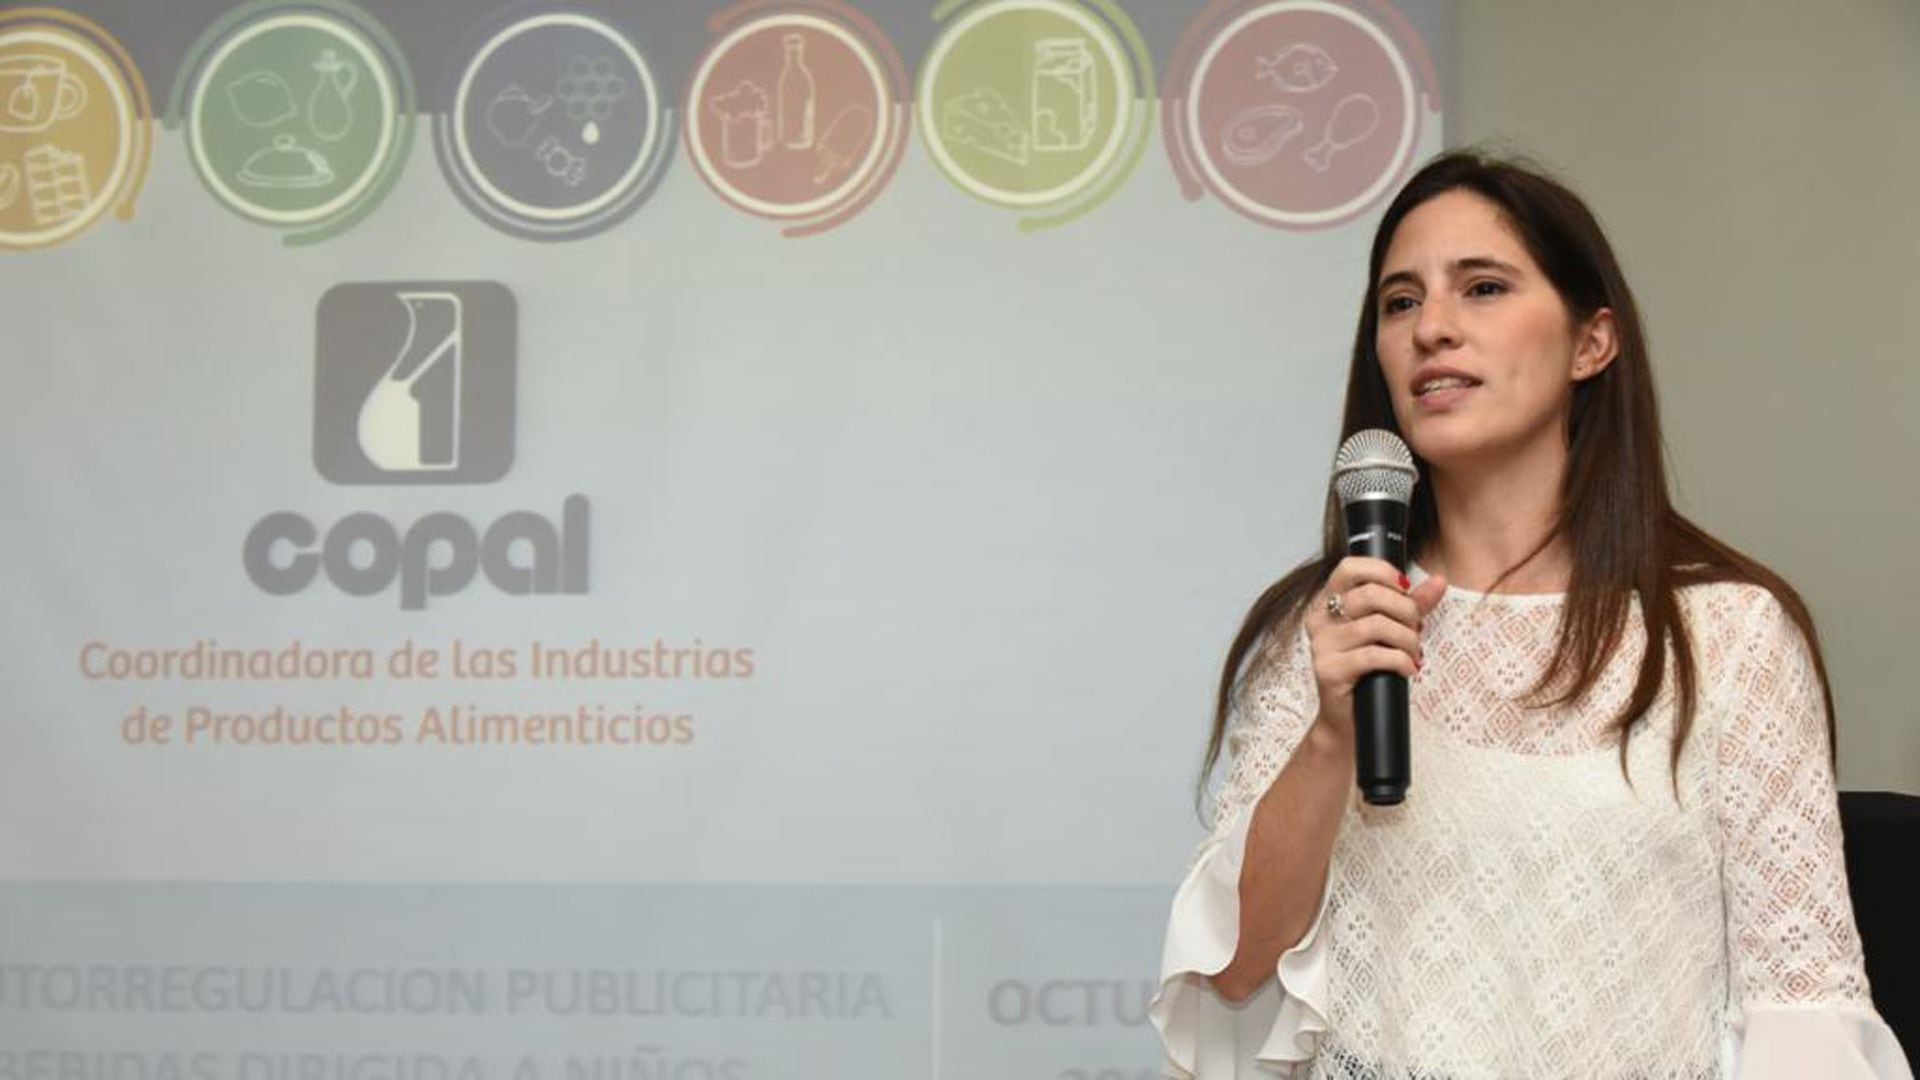 Carla Martin Bonito próxima directora ejecutiva de Copal.